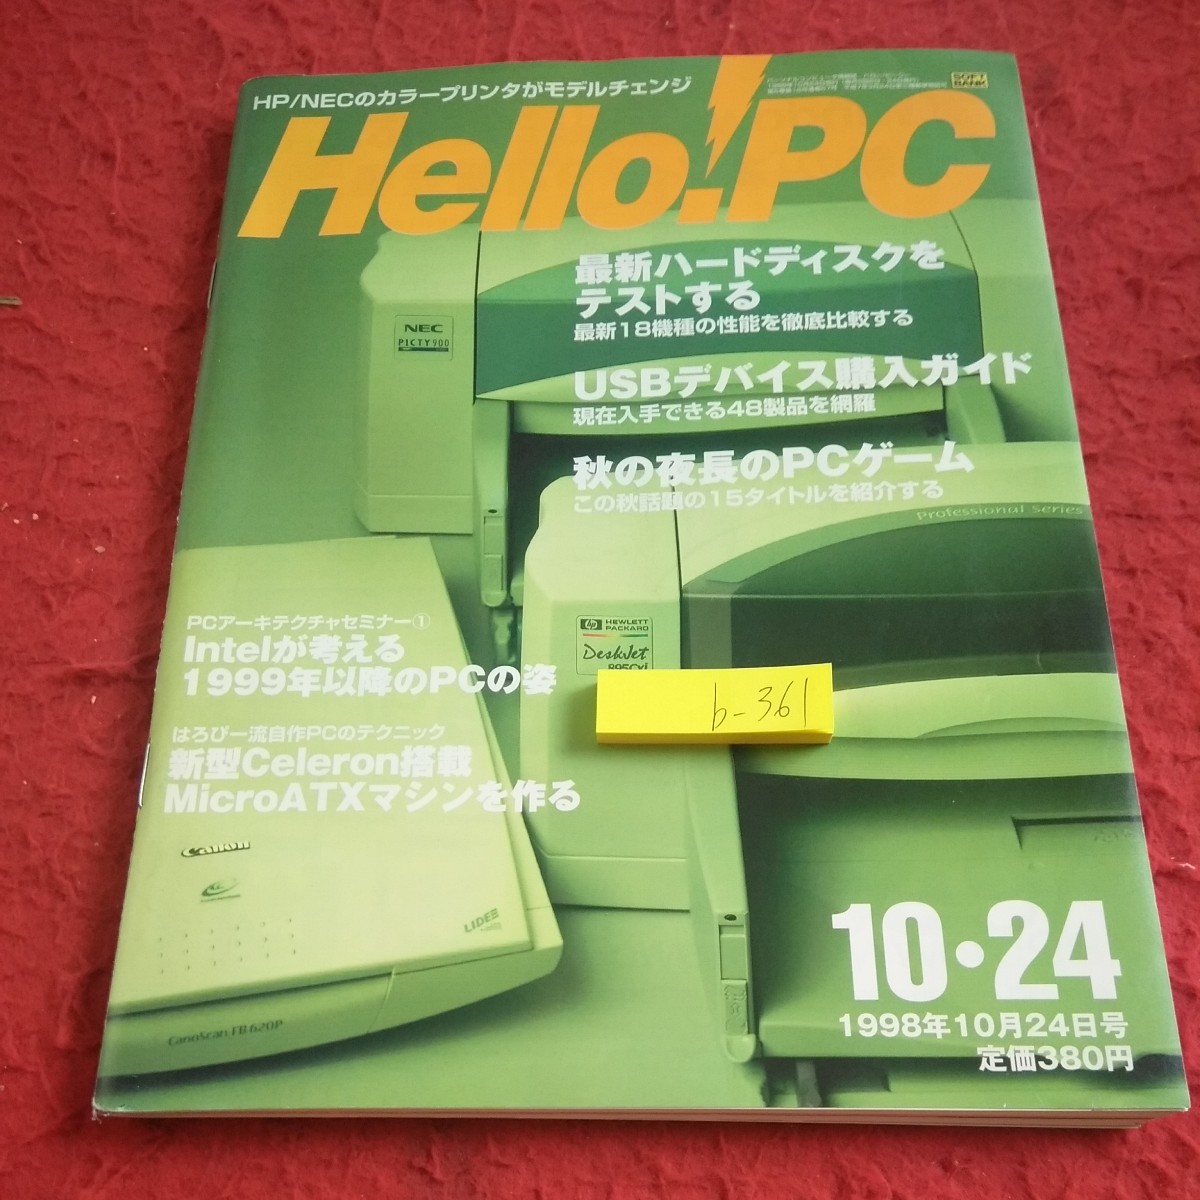 b-361 ハロー!PC 最新ハードディスクをテストする USBデバイス購入ガイド 秋の夜長のPCゲーム 1998年発行 ソフトバンク※1_傷あり